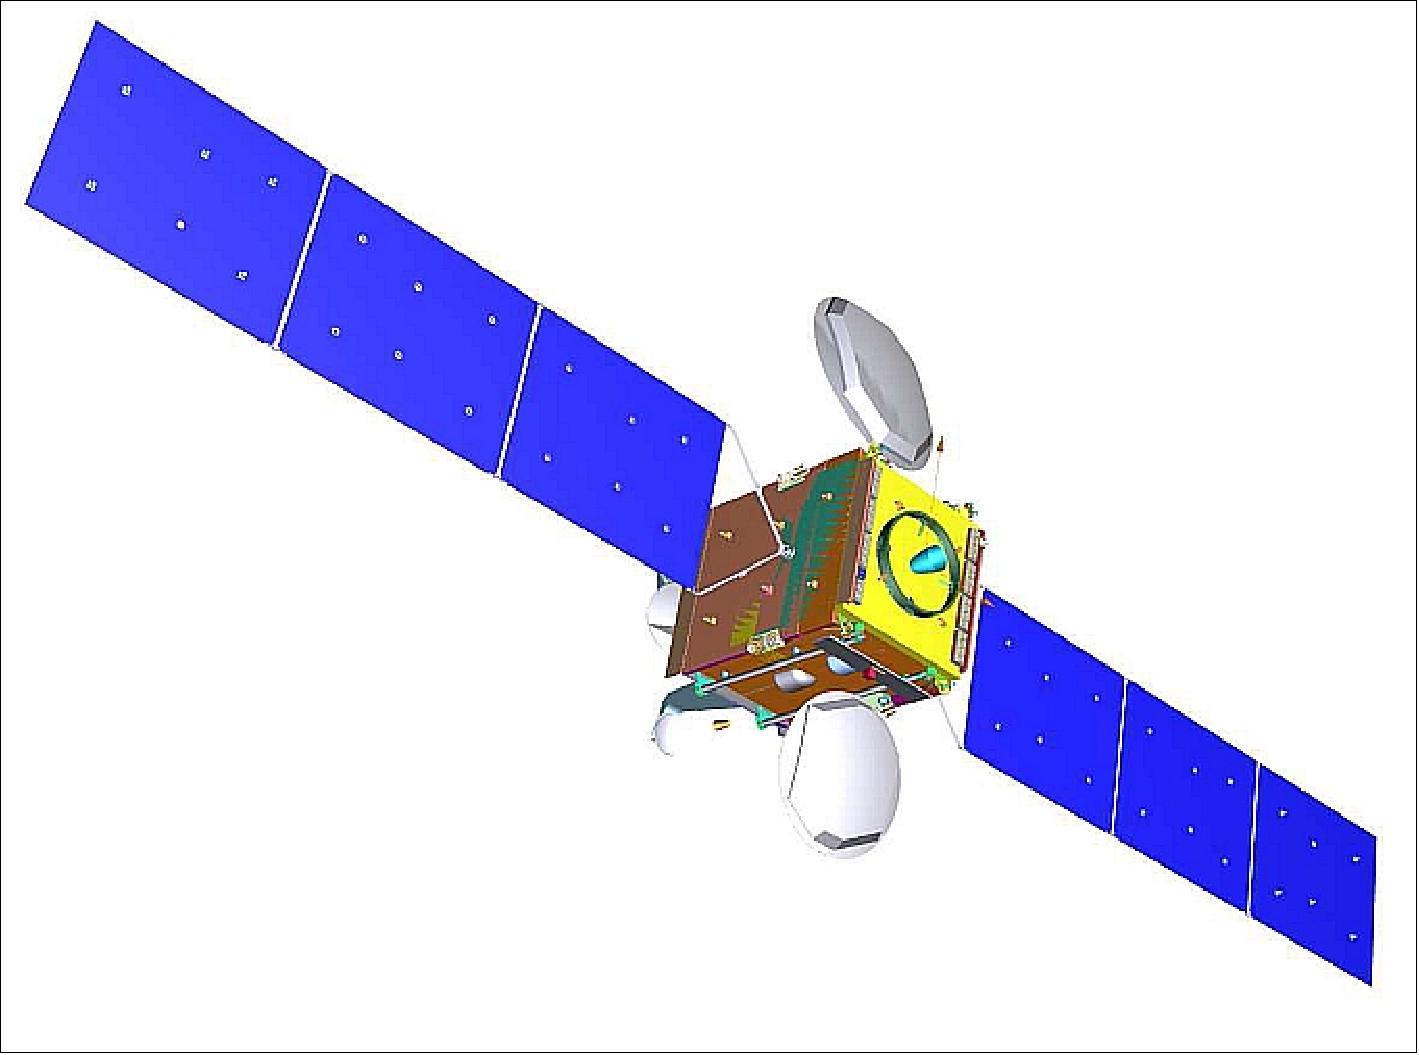 Figure 1: Artist's rendition of the generic SGEO spacecraft in orbit (image credit: SGEO consortium)